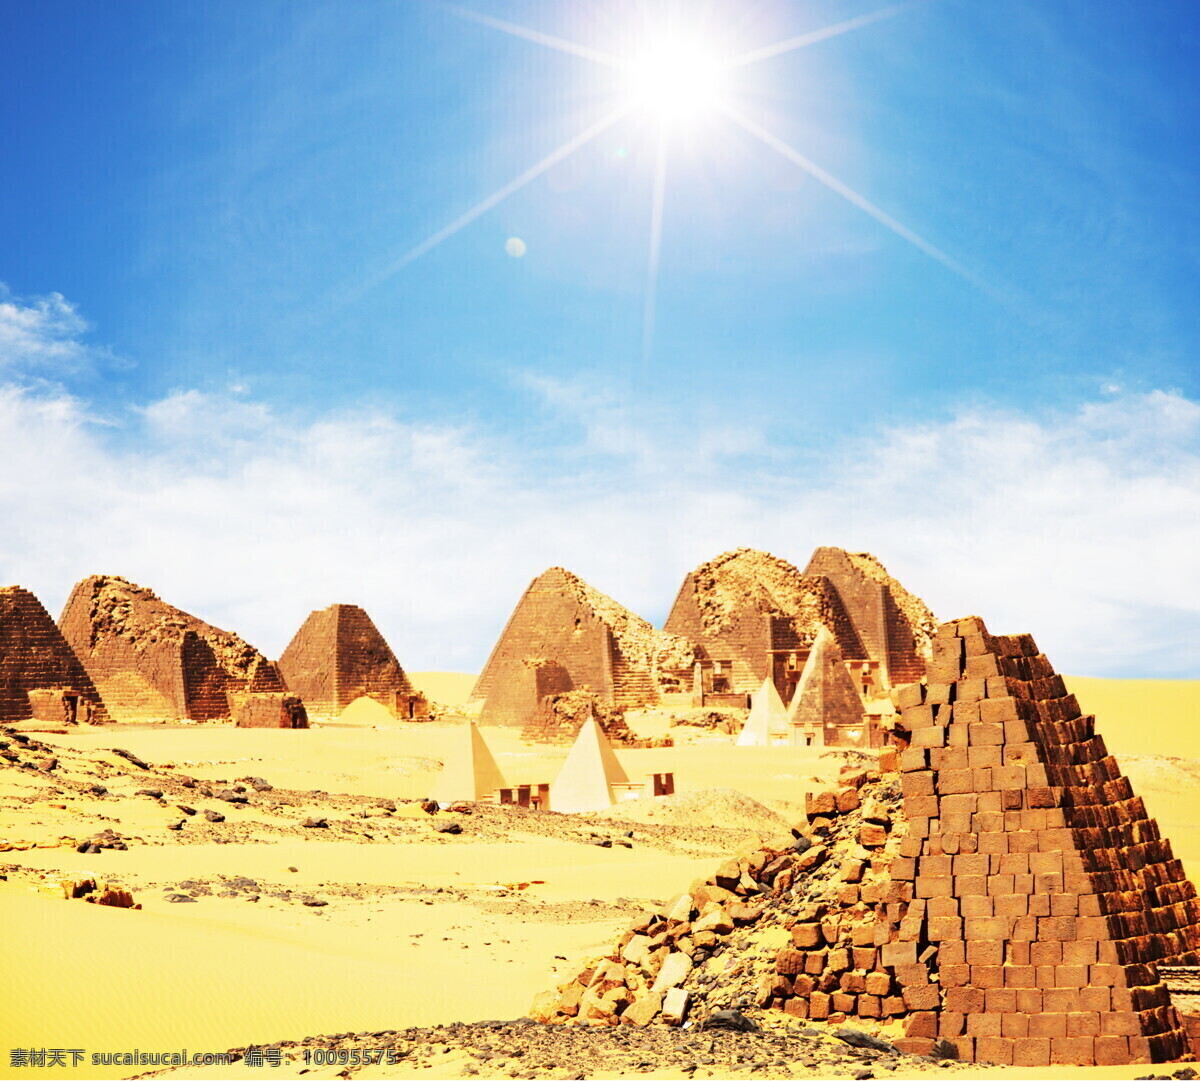 金字塔 风景摄影 高清 蓝天 天空 白云 阳光 太阳 埃及 文明古迹 美丽 自然风景 旅游景点 美景 景色 摄影图 高清图片 自然景观 白色